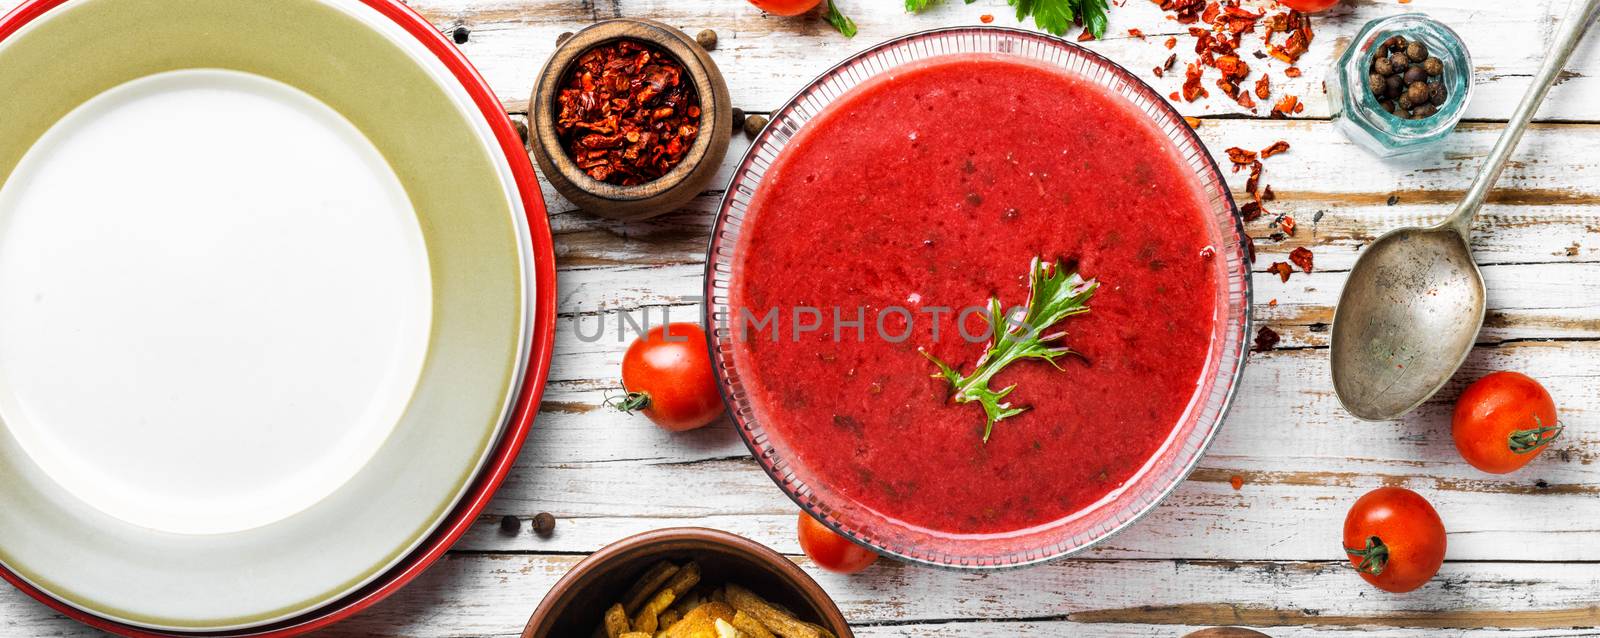 Tomato gazpacho soup by LMykola